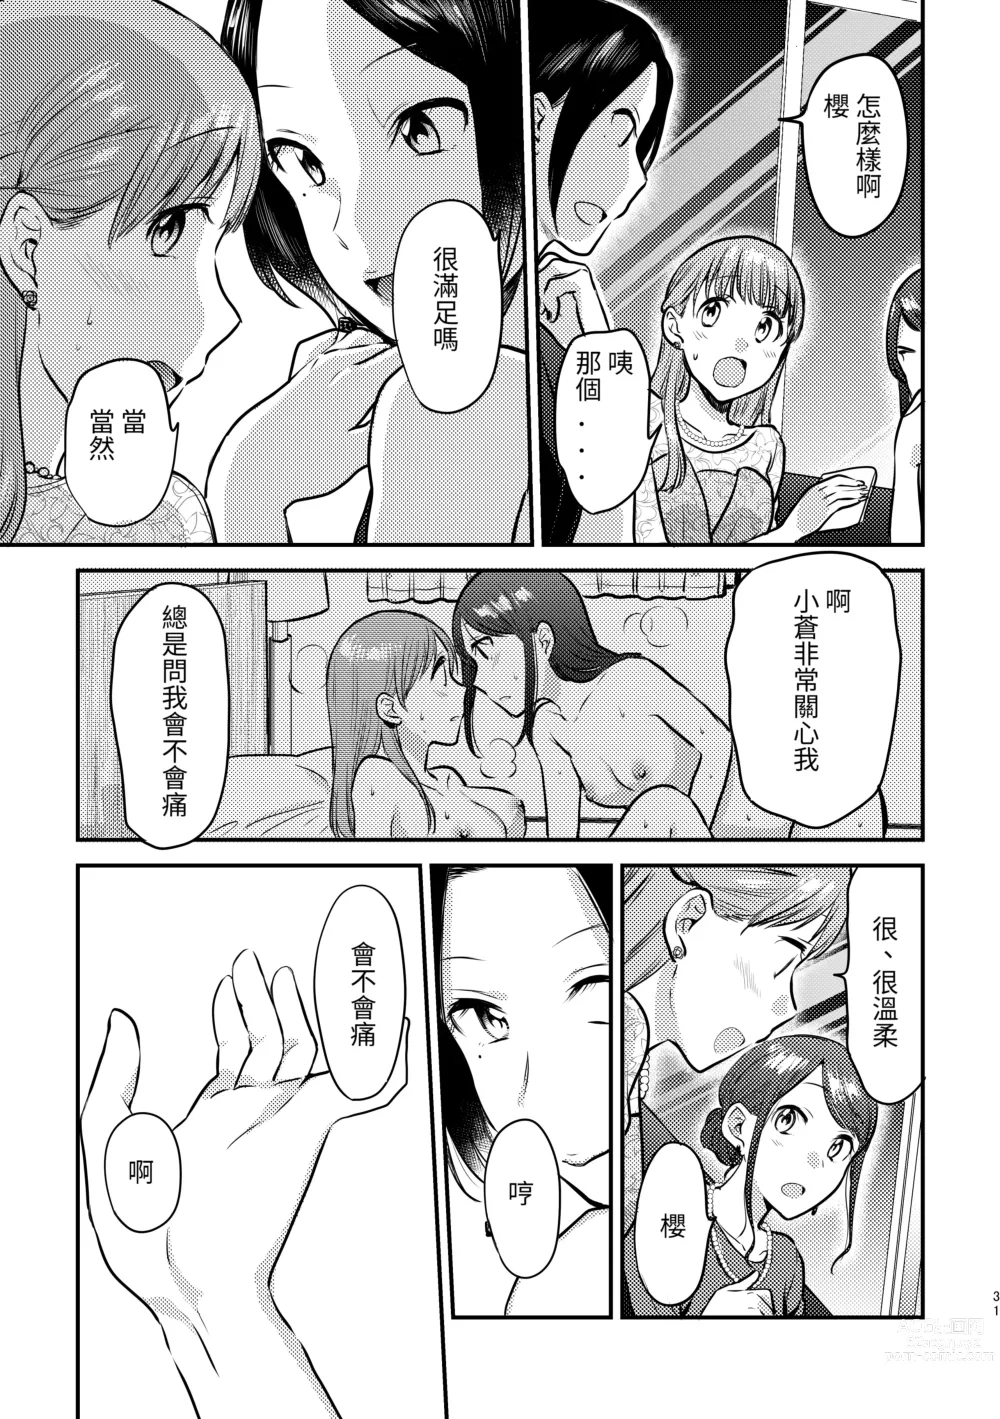 Page 9 of manga Hontono Kanojo